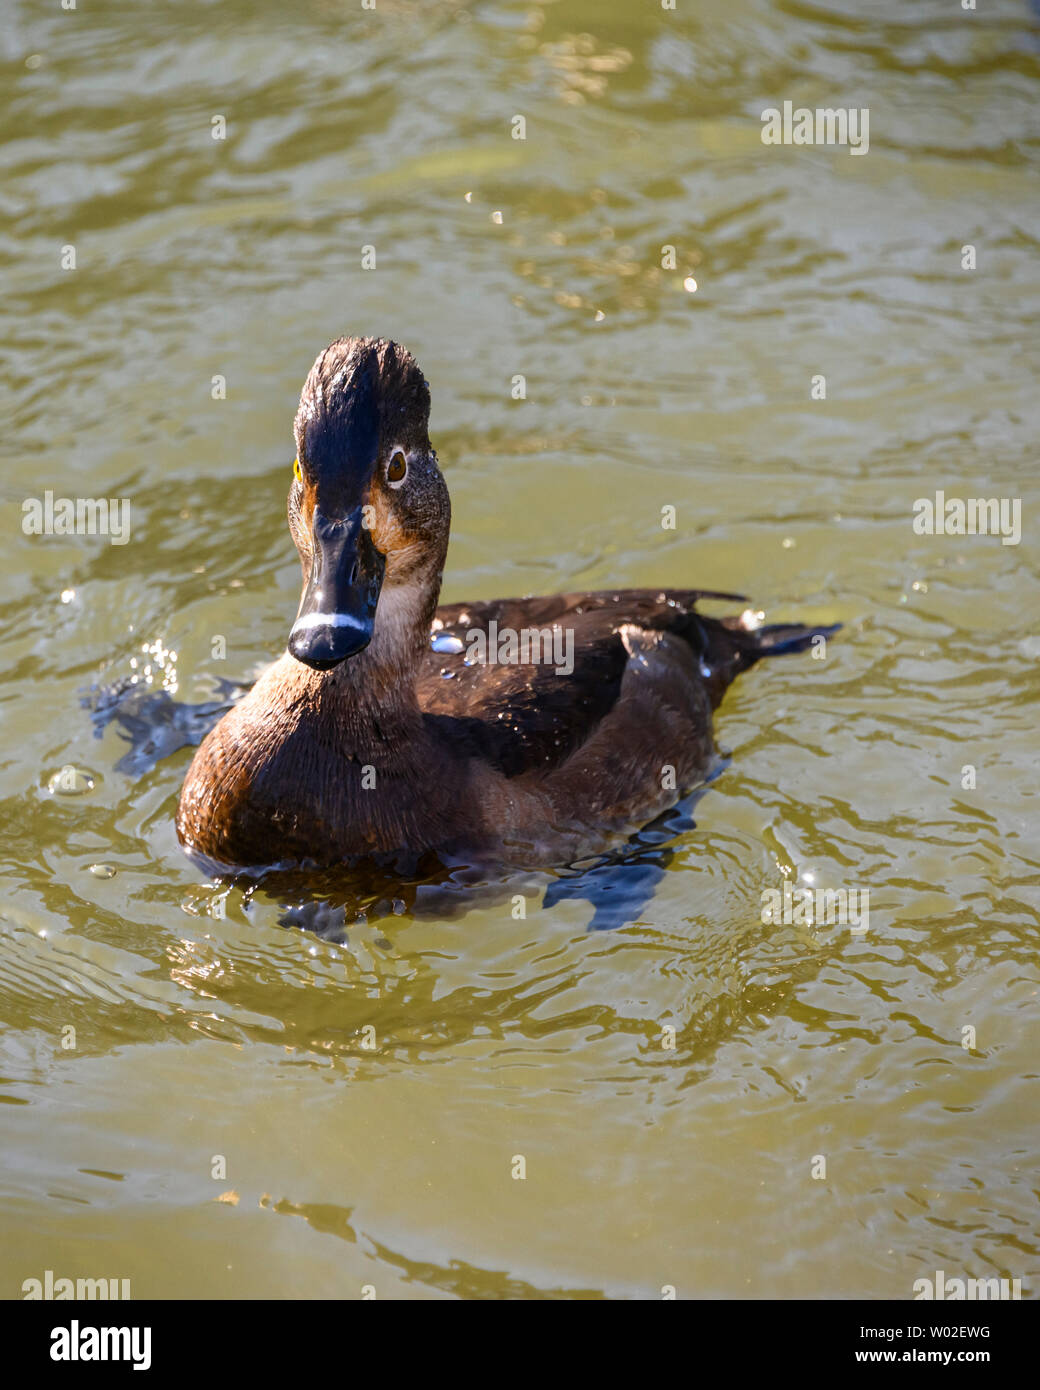 Magnifique canard femelle à col annulaire nageant dans le lac. Oiseau brun à plumes. Note grise à rayures et yeux jaunes intenses. Anneau rouge autour du cou. Ensoleillé, Banque D'Images